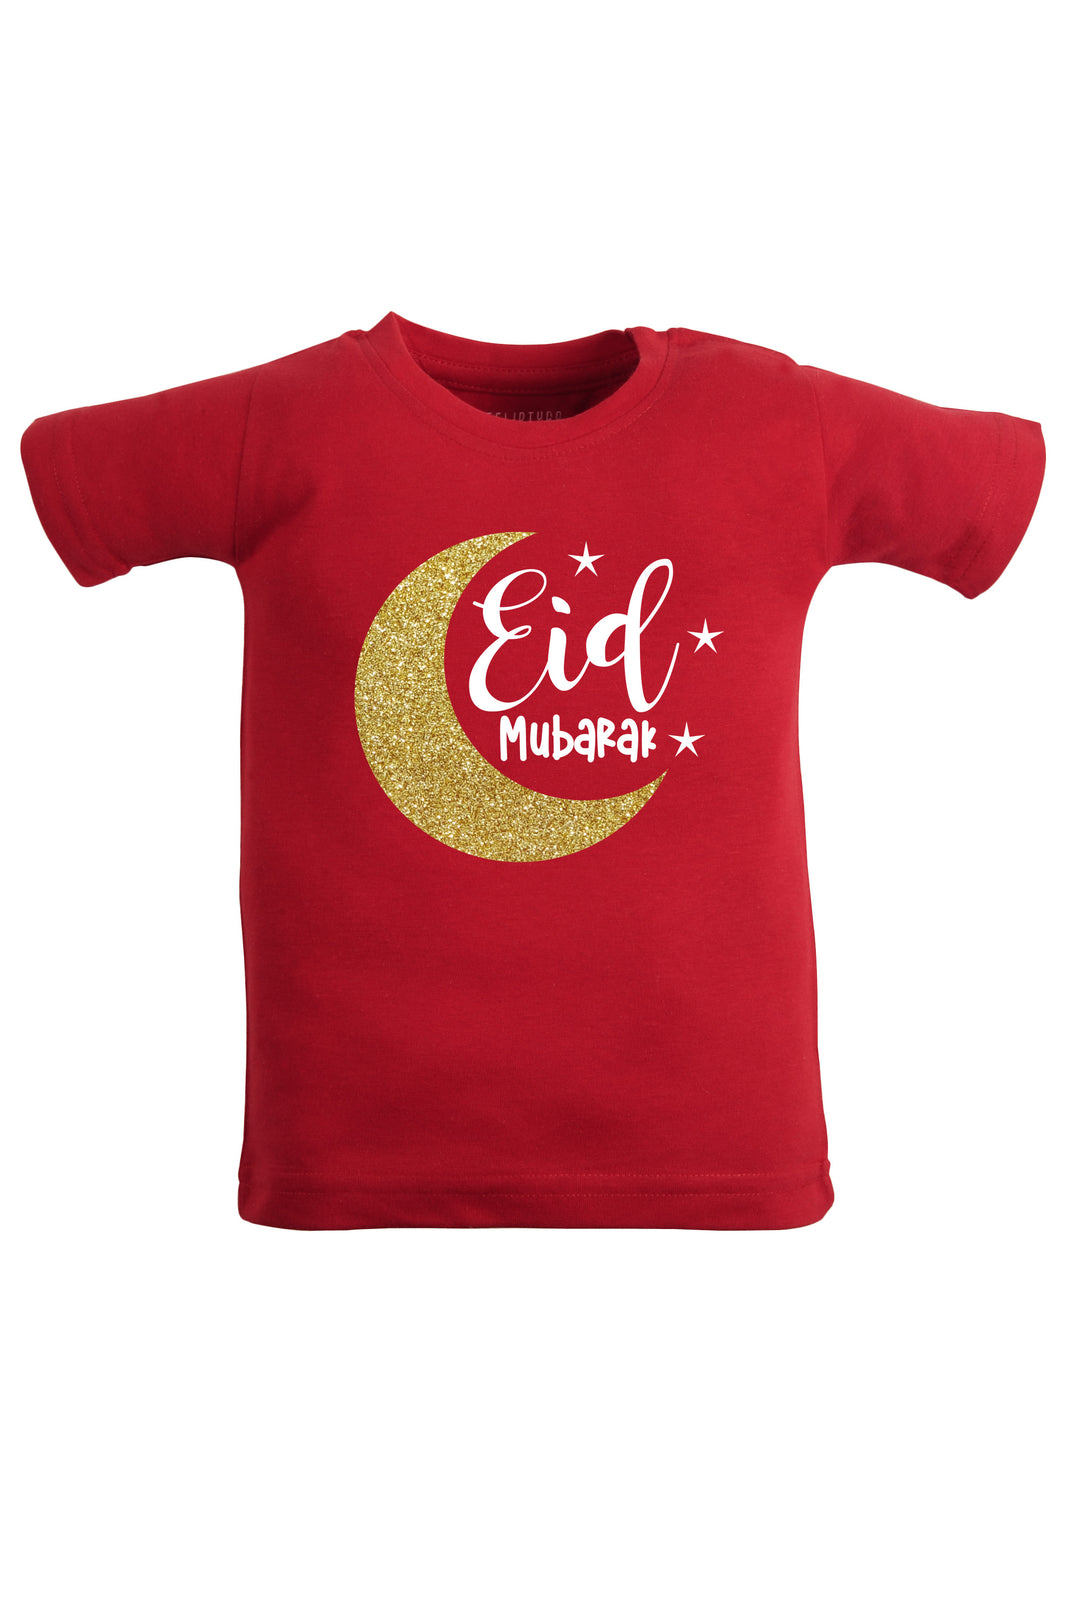 Eid Mubarak Kids T Shirt